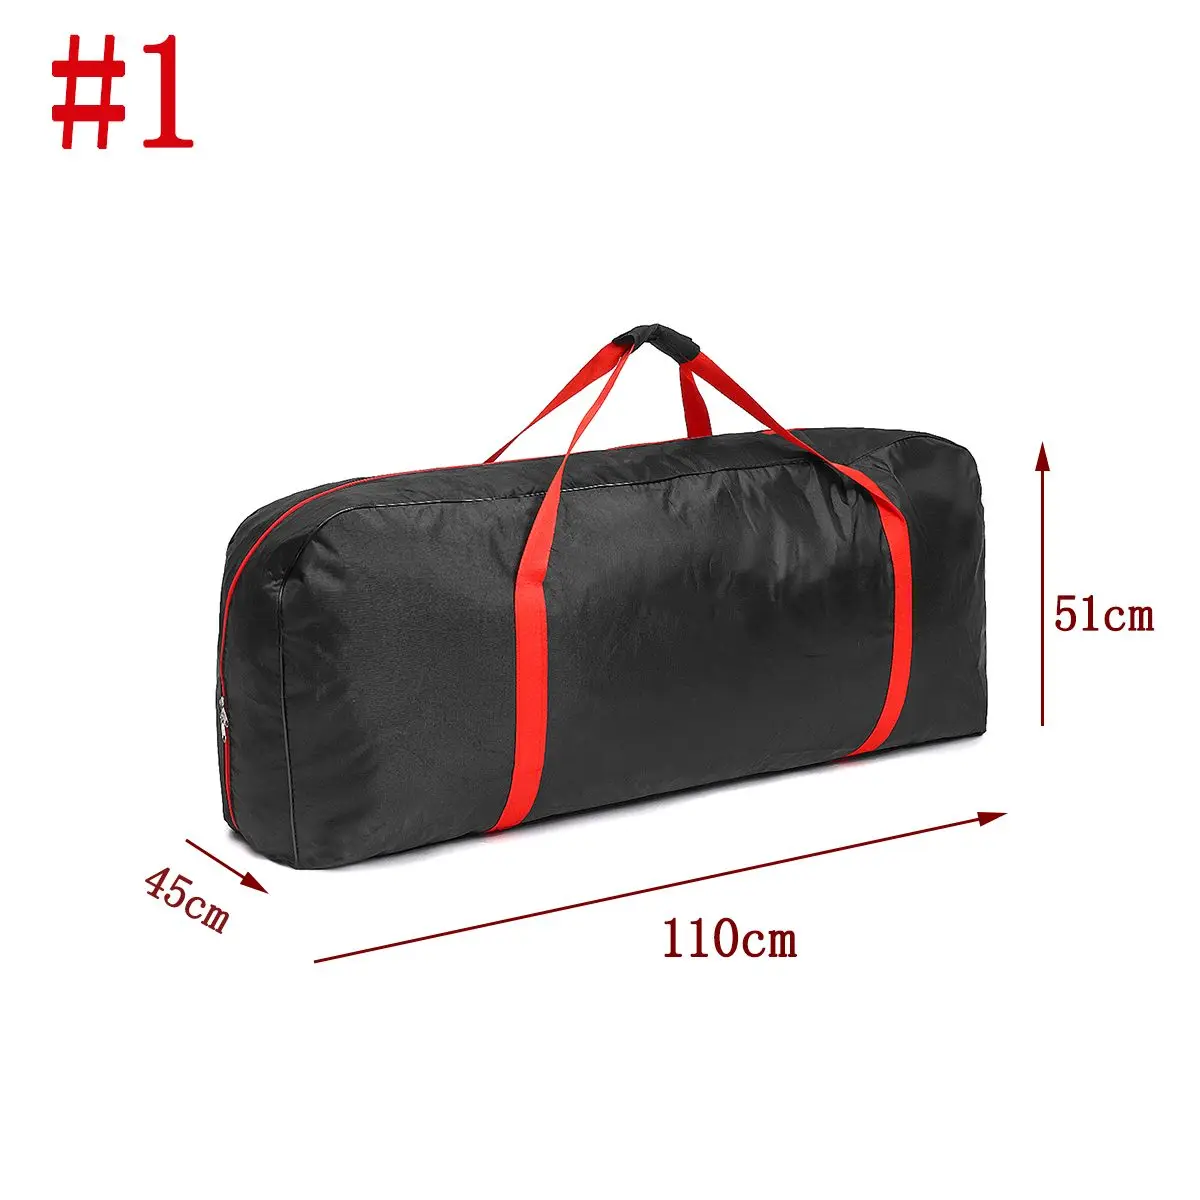 4 размера, сумка для переноски на переднем седле, сумка для питомца, корзина для Xiaomi Mijia M365, запчасти для скутера, электрический скейтборд, сумка для хранения велосипеда - Цвет: type1